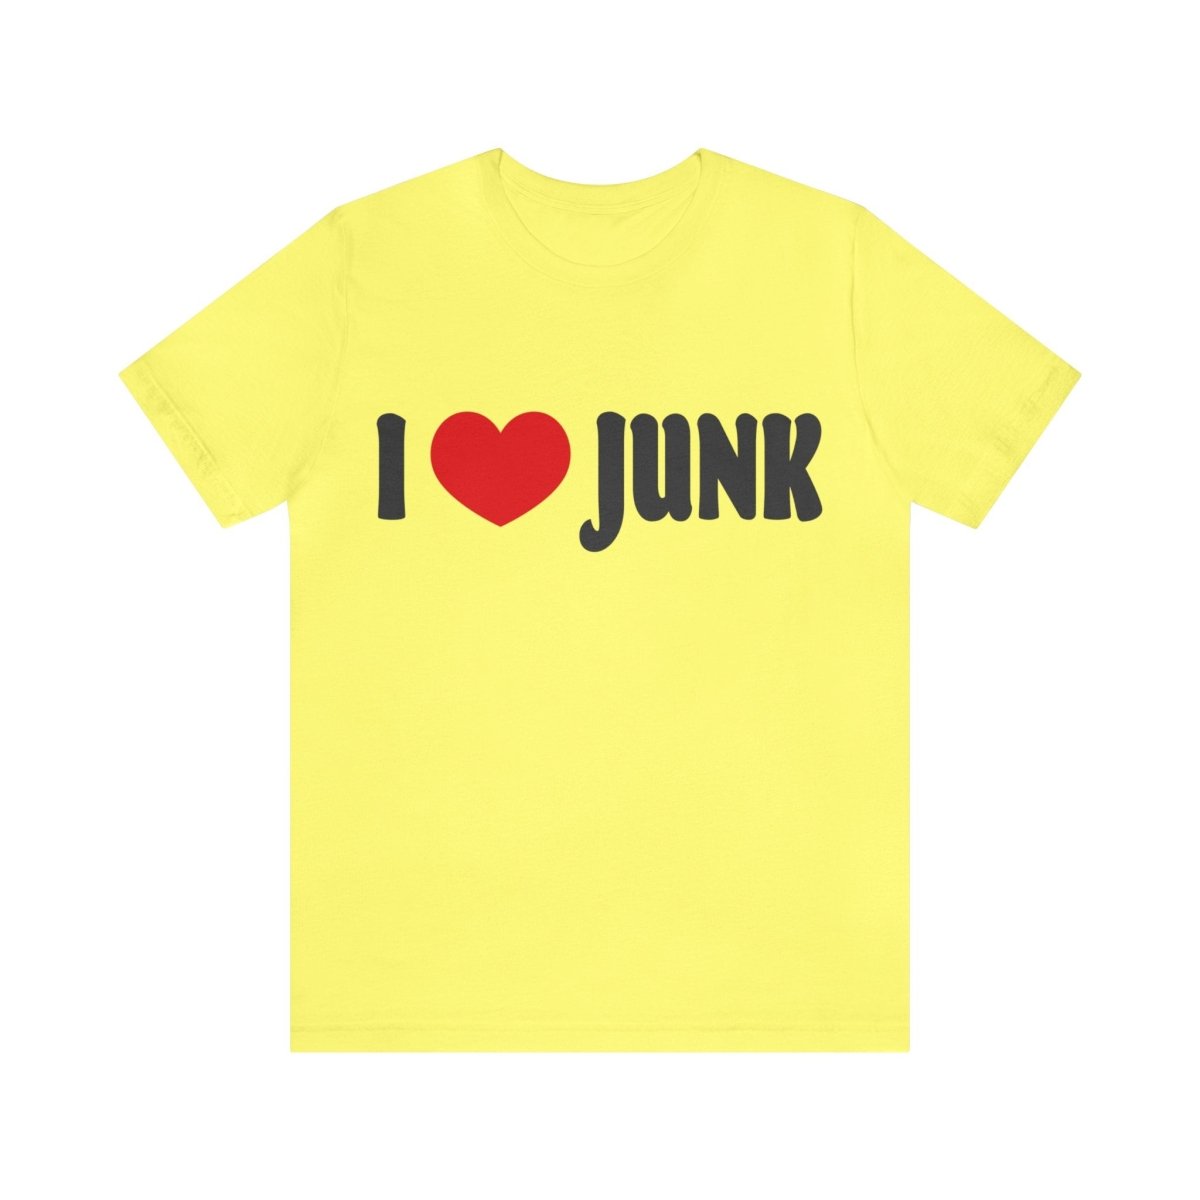 I Love Junk Premium T-Shirt, Antiques, Garage Sales, Flea Markets, Junkin' Genius Shopper